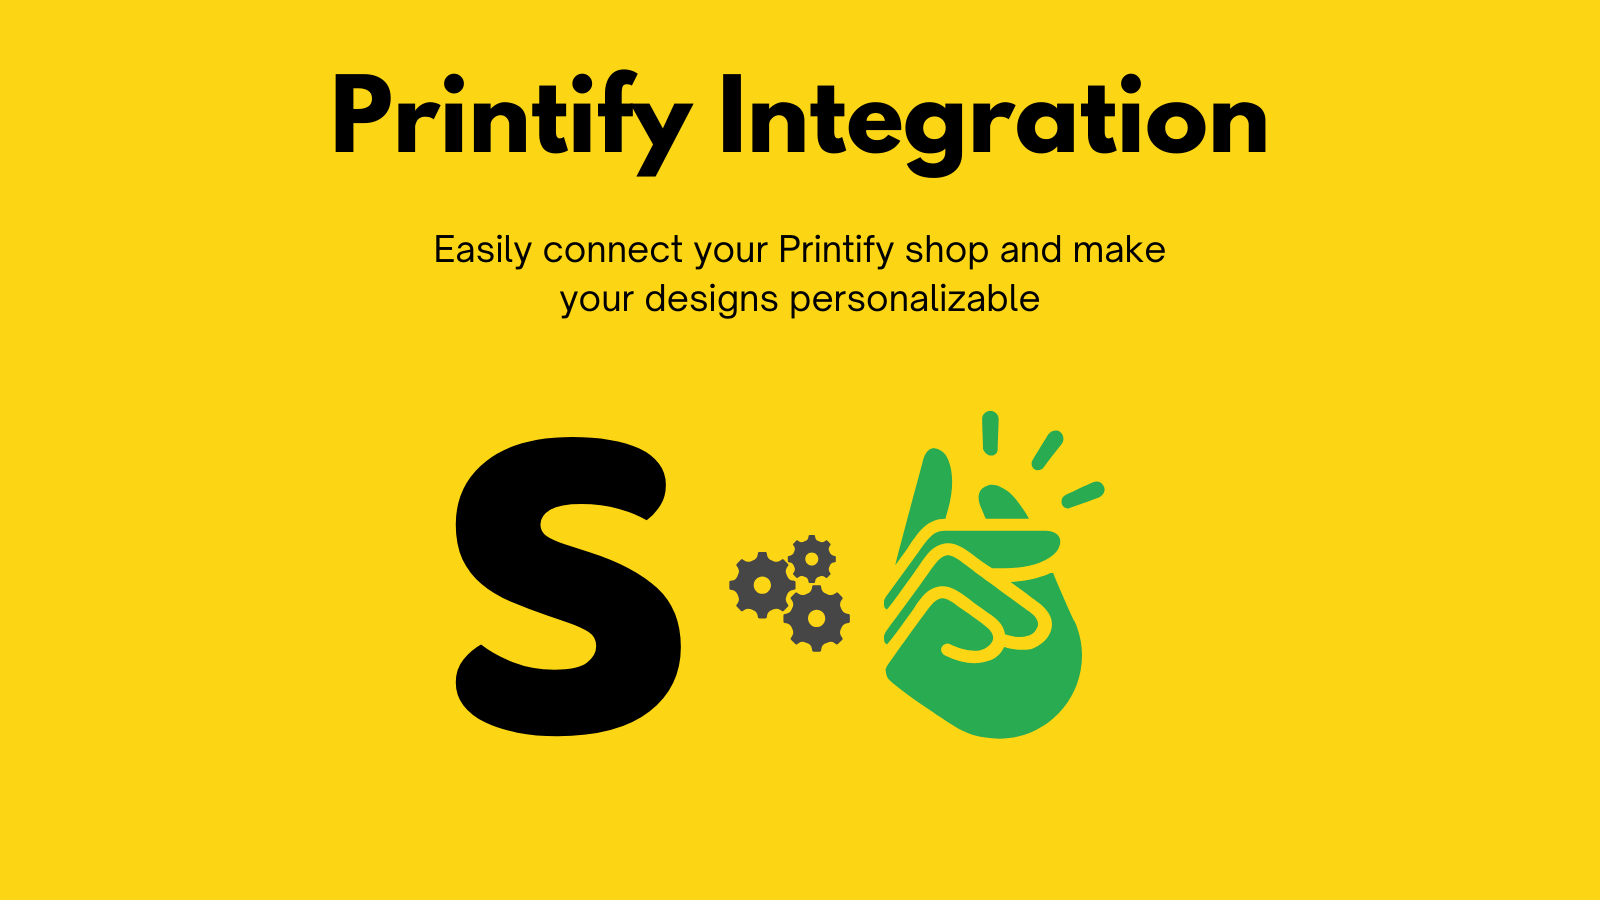 Intégration Printify en utilisant SnapArt pour les commandes personnalisées